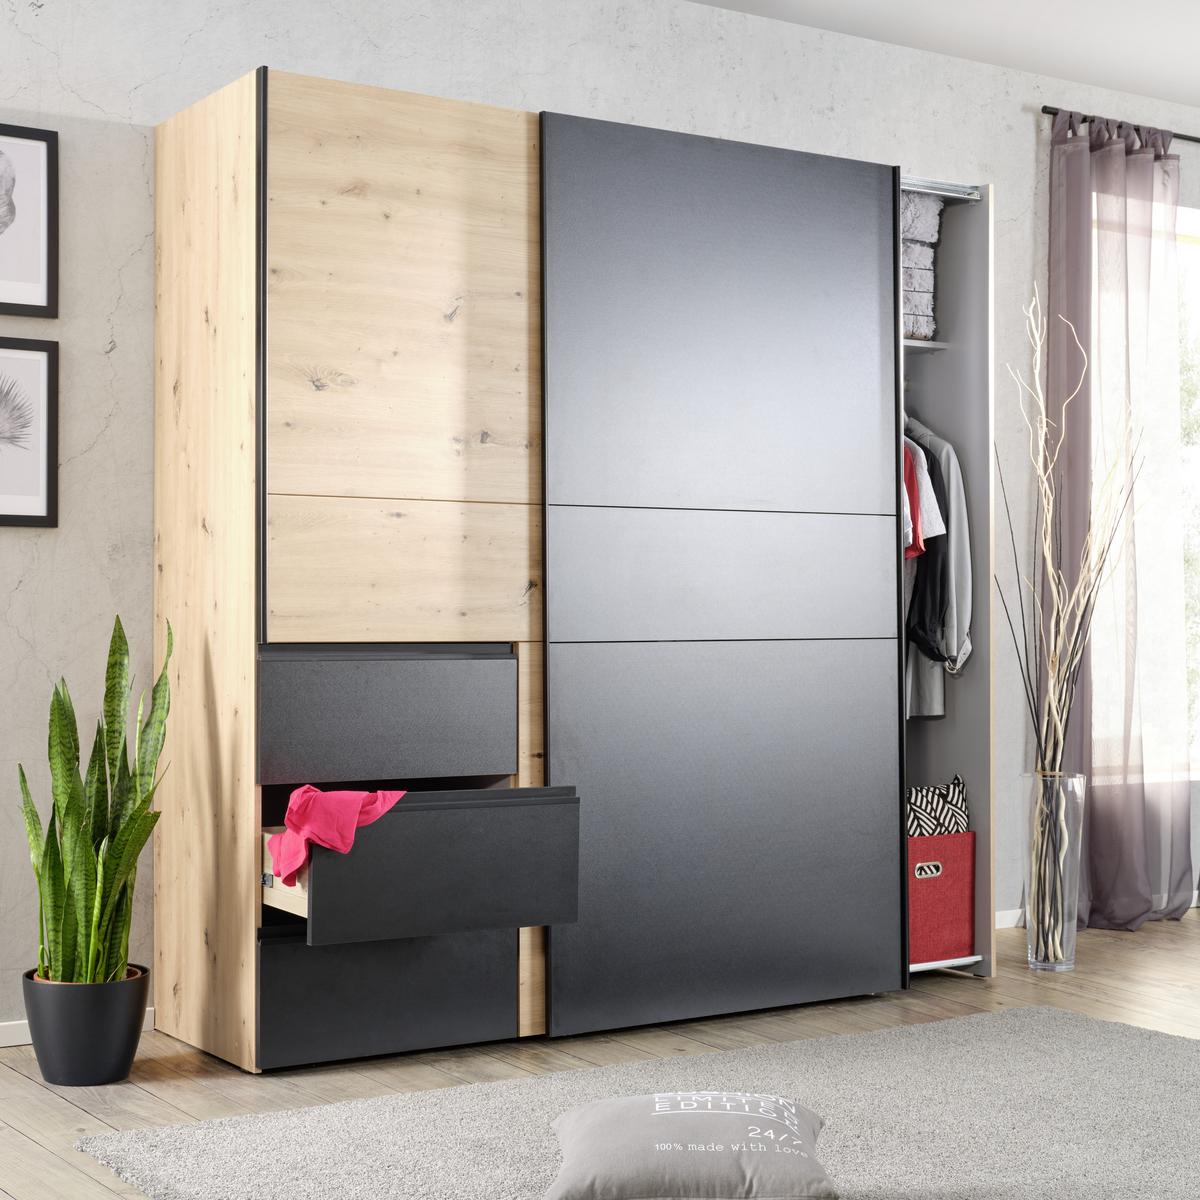 Autokühlschrank mit 2 Rädern bunt Farbe: schwarz, grau online kaufen -  Orbisana